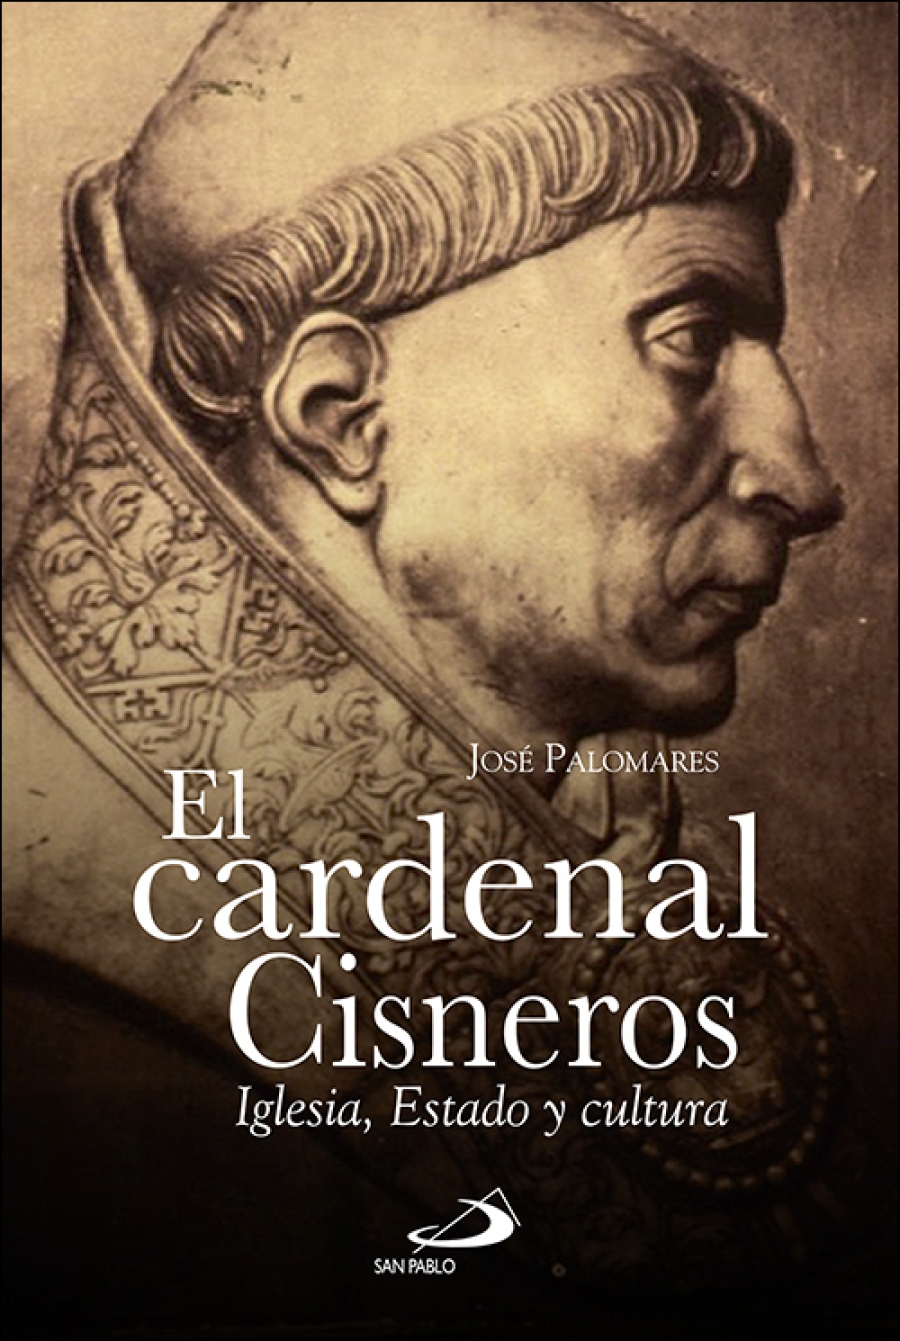 José Palomares presenta su libro El cardenal Cisneros, editado en San Pablo